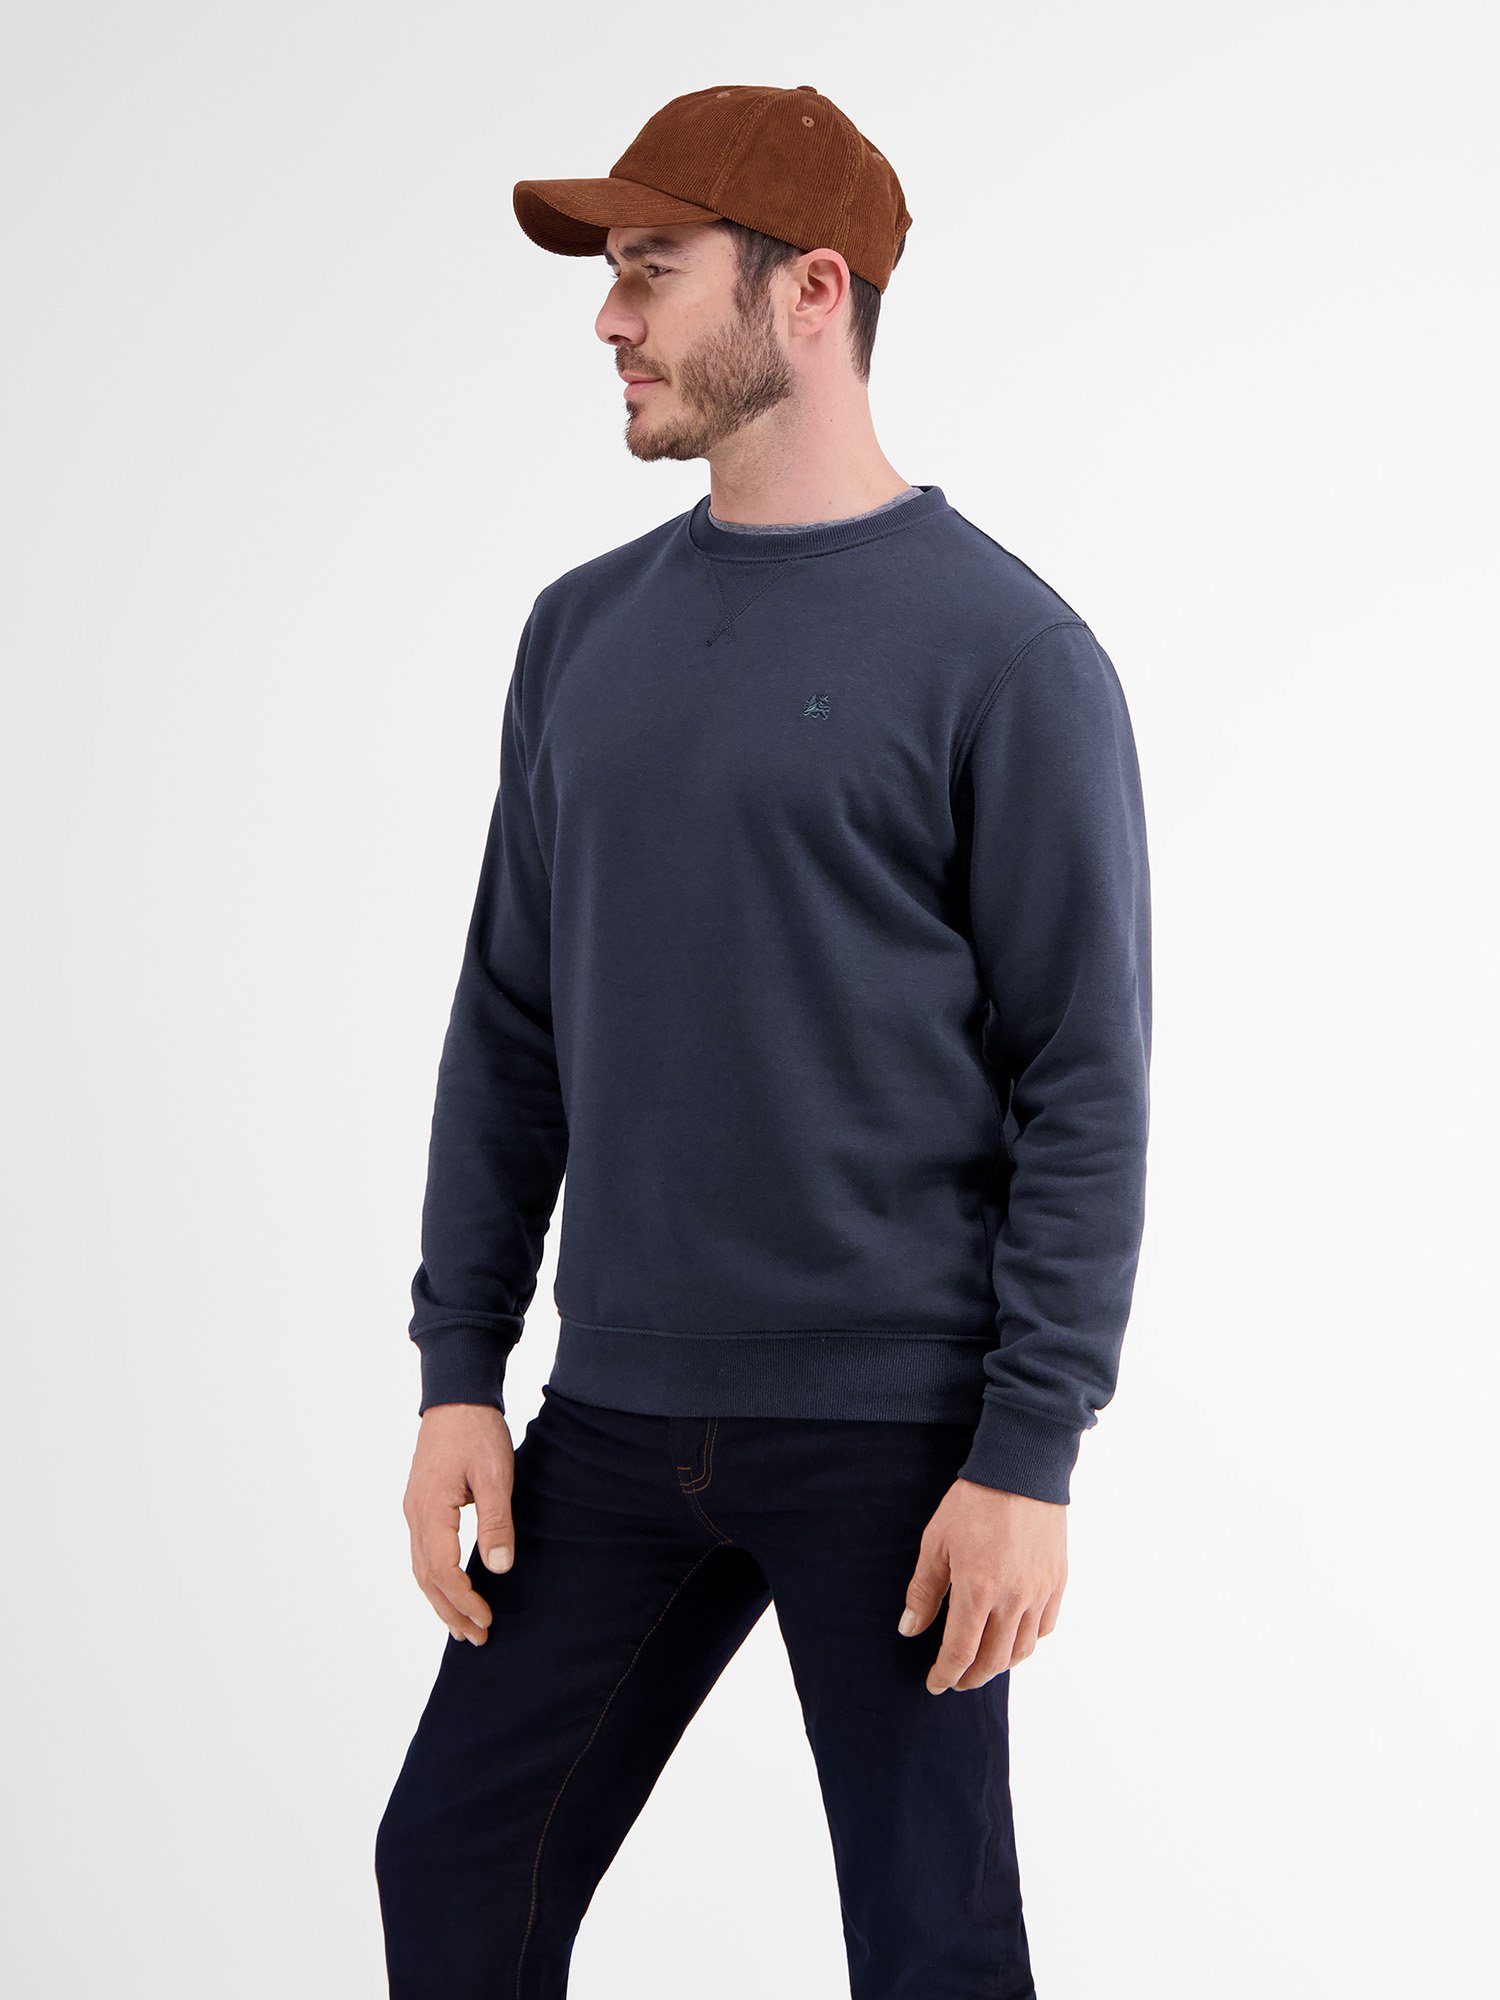 Sweater Strukturqualität LERROS Sweatshirt Leichter NAVY CLASSIC in LERROS